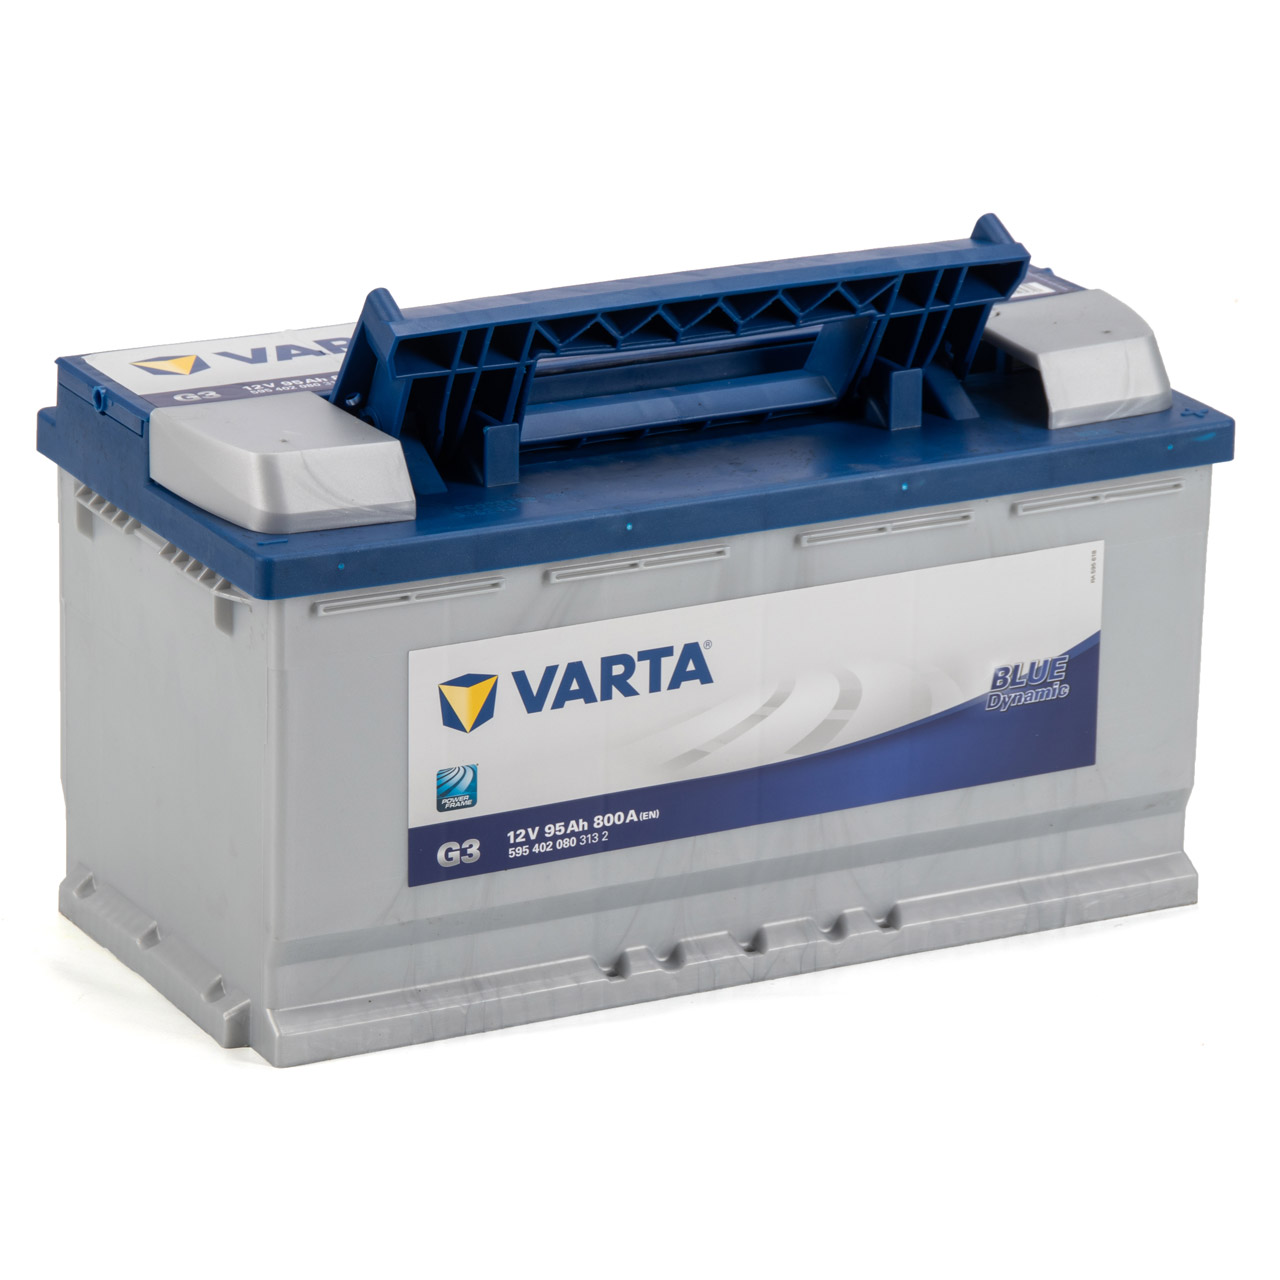 VARTA Starterbatterien / Autobatterien - 5954020803132 - ws